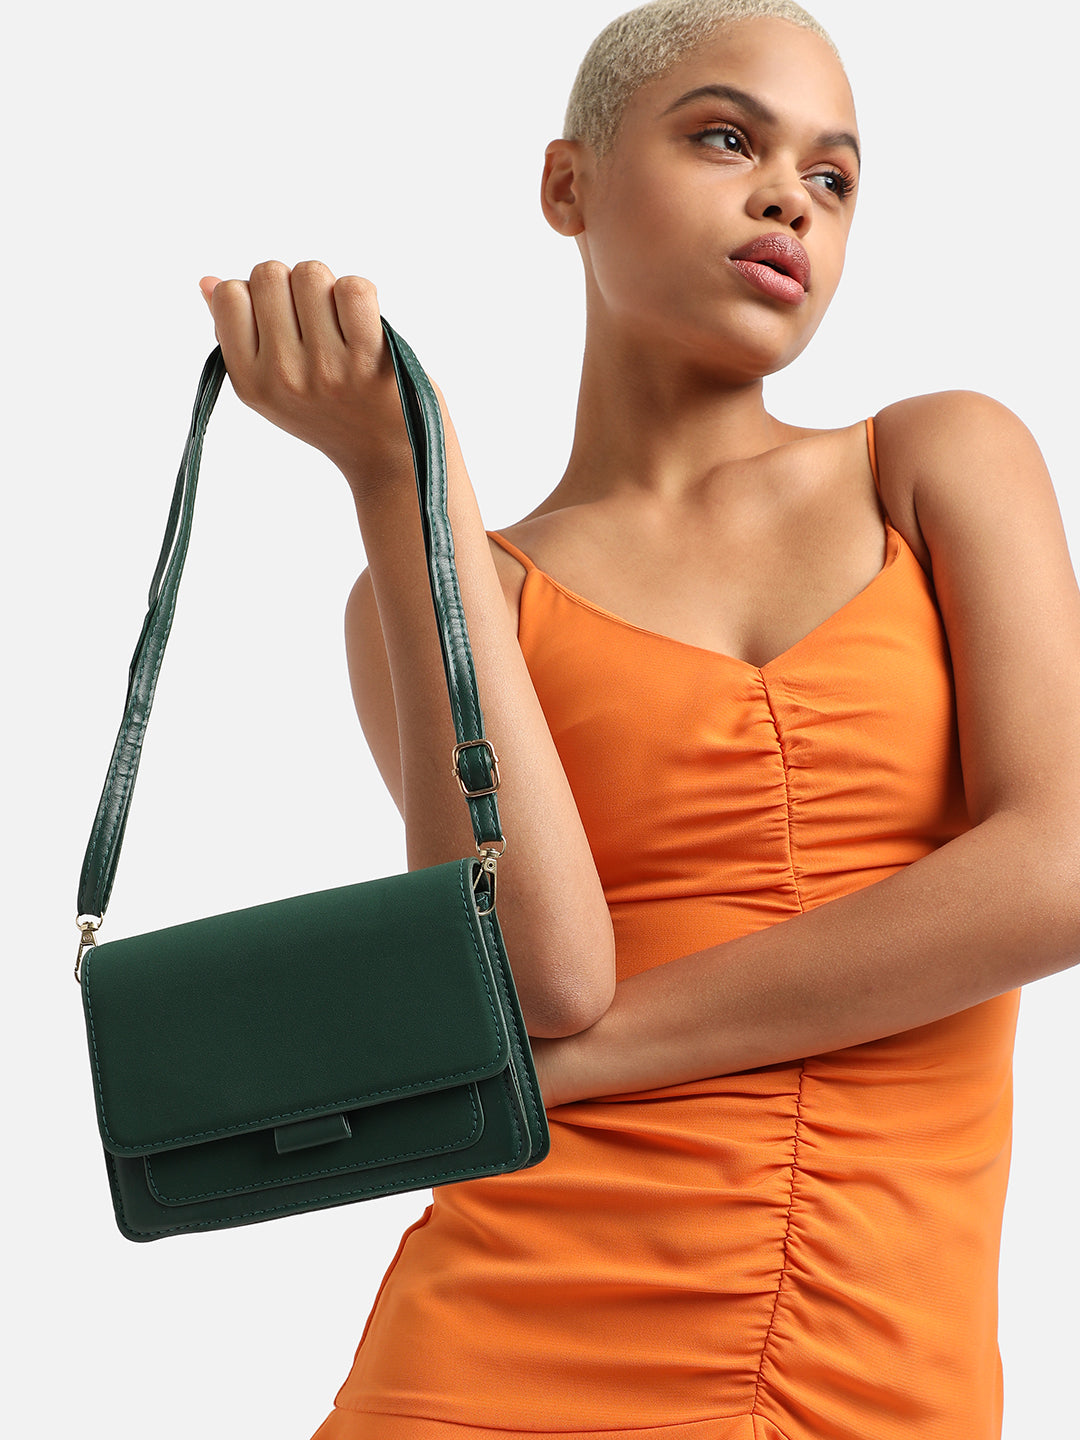 Harmony Green Handbag